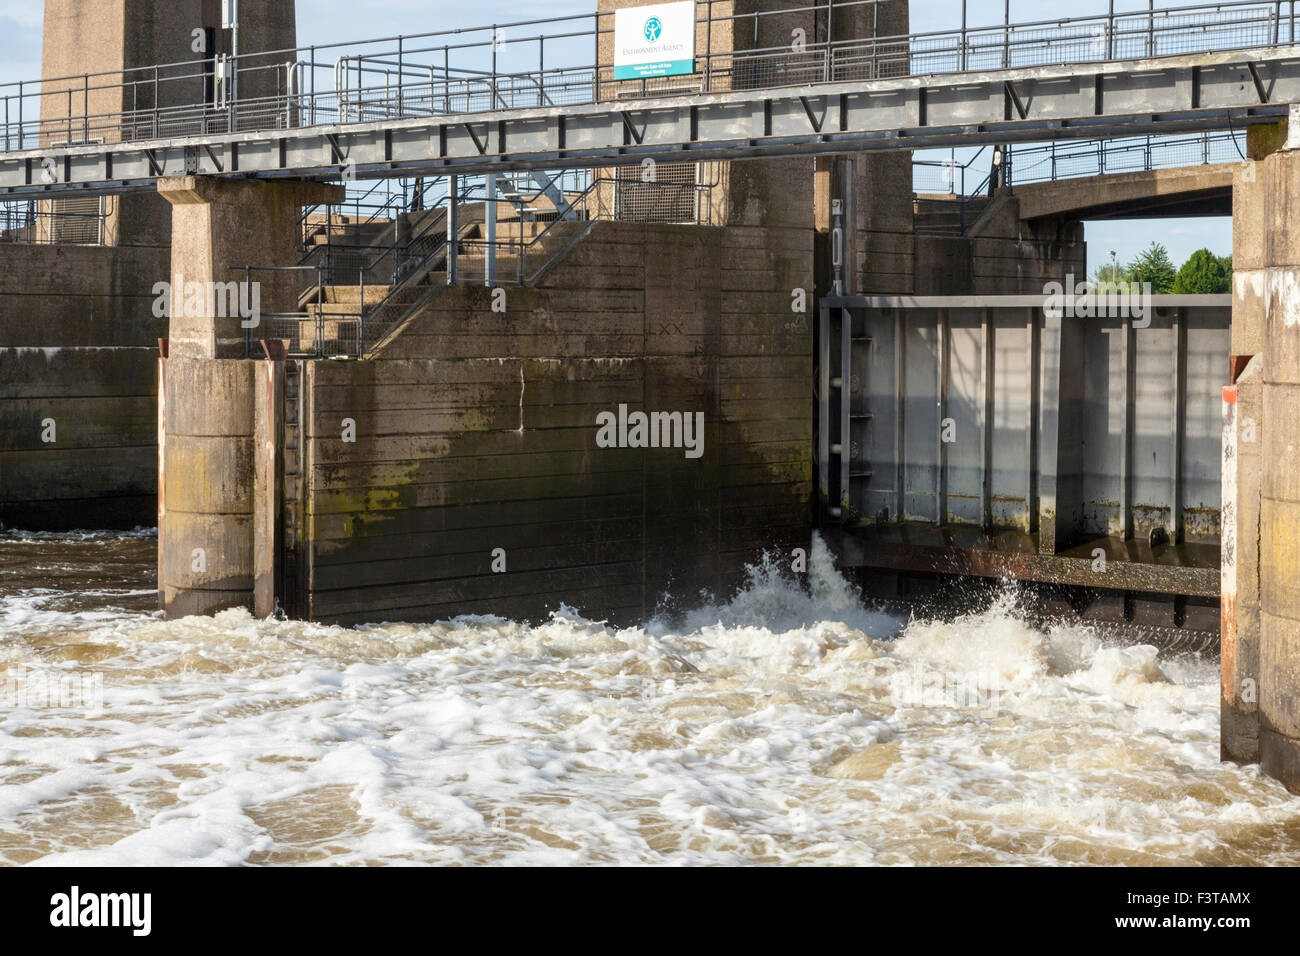 Schleuse Gate bei Holme Schleusen durch die Umweltagentur verwaltet auf dem Fluss Trent an Colwick, Nottingham, England, Großbritannien Stockfoto